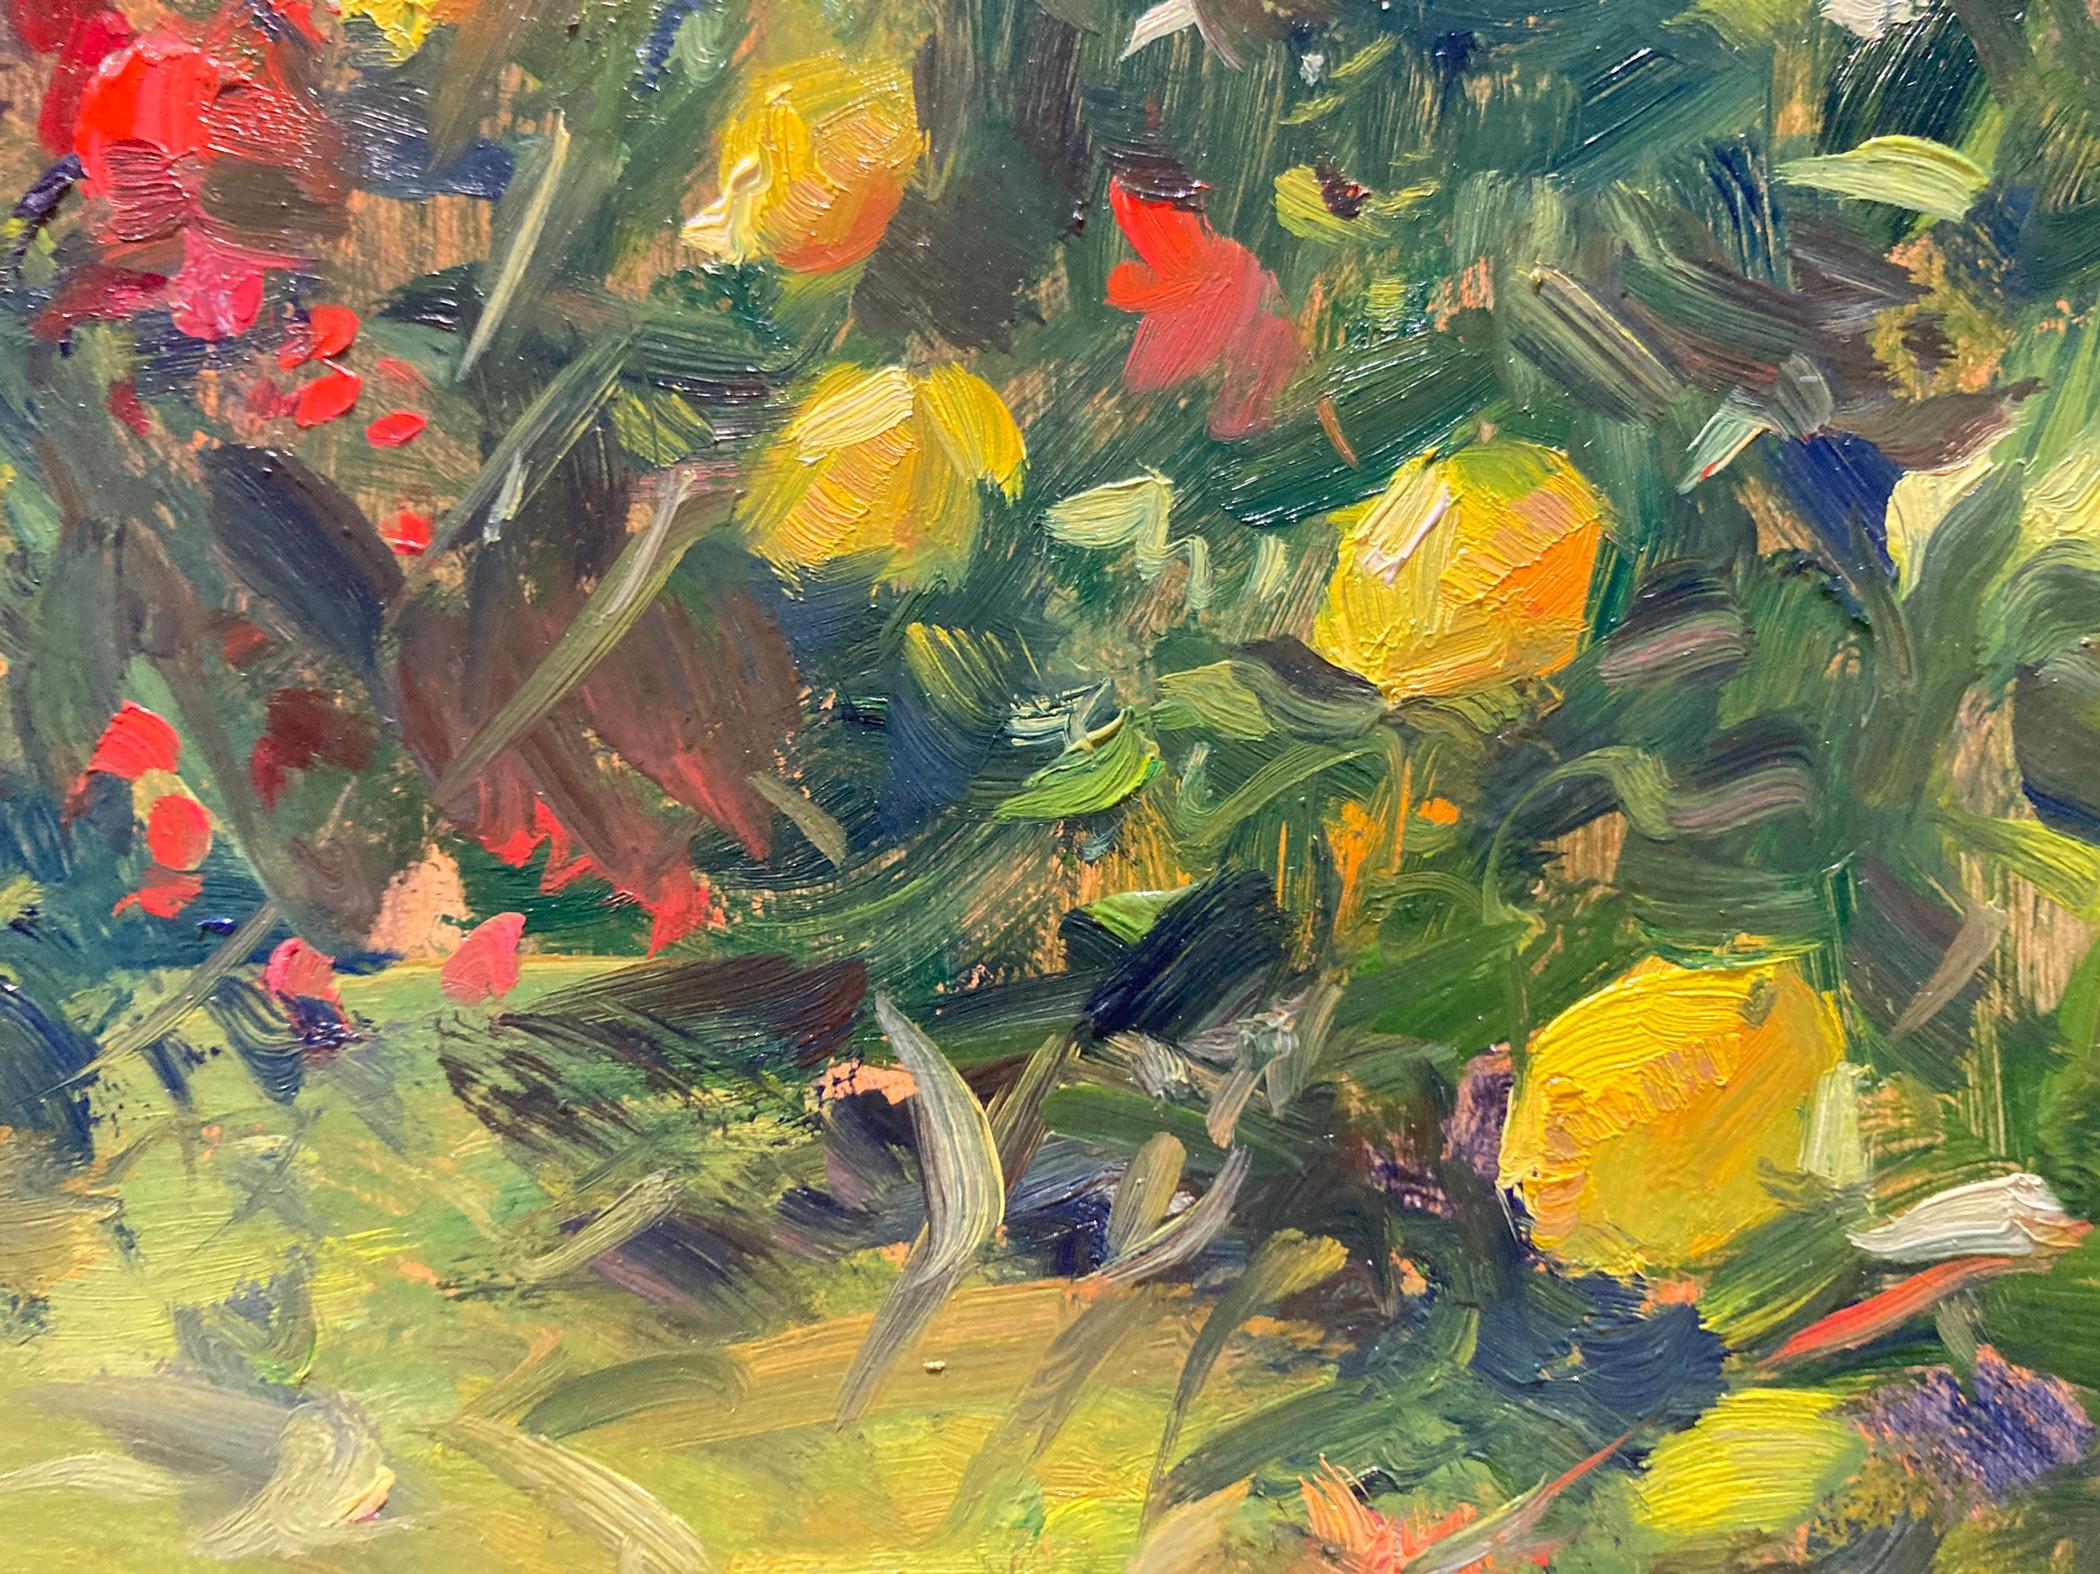 Une peinture en plein air de fleurs lumineuses poussant dans un jardin. Up&Up encadre une composition très rapprochée pour montrer pleinement la richesse des fleurs dans cette peinture impressionniste sur panneau. 

Dimensions encadrées : 19.5 x